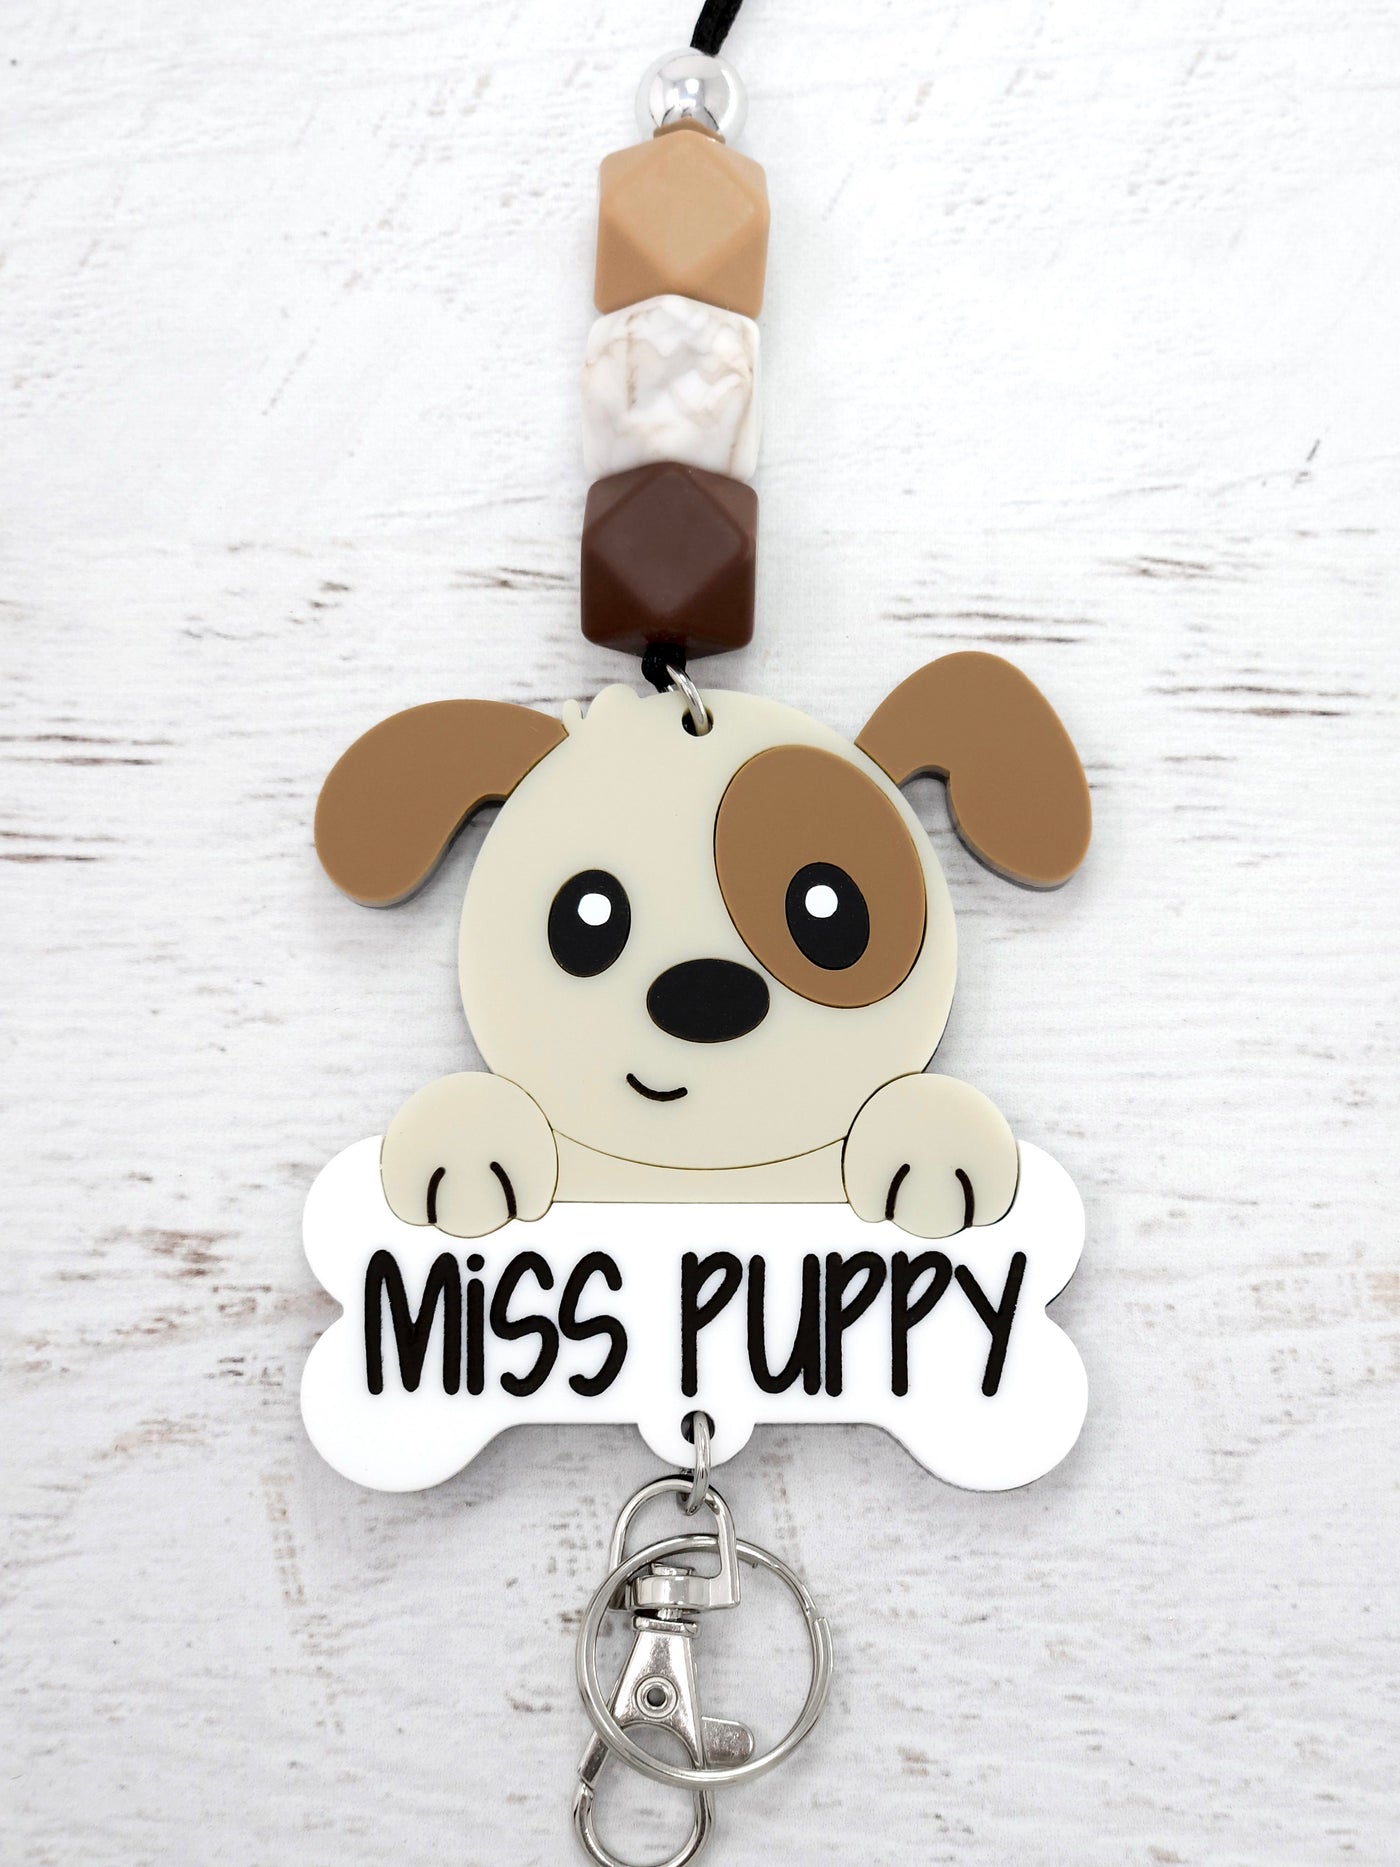 Personalized Acrylic Cute Puppy Lanyard